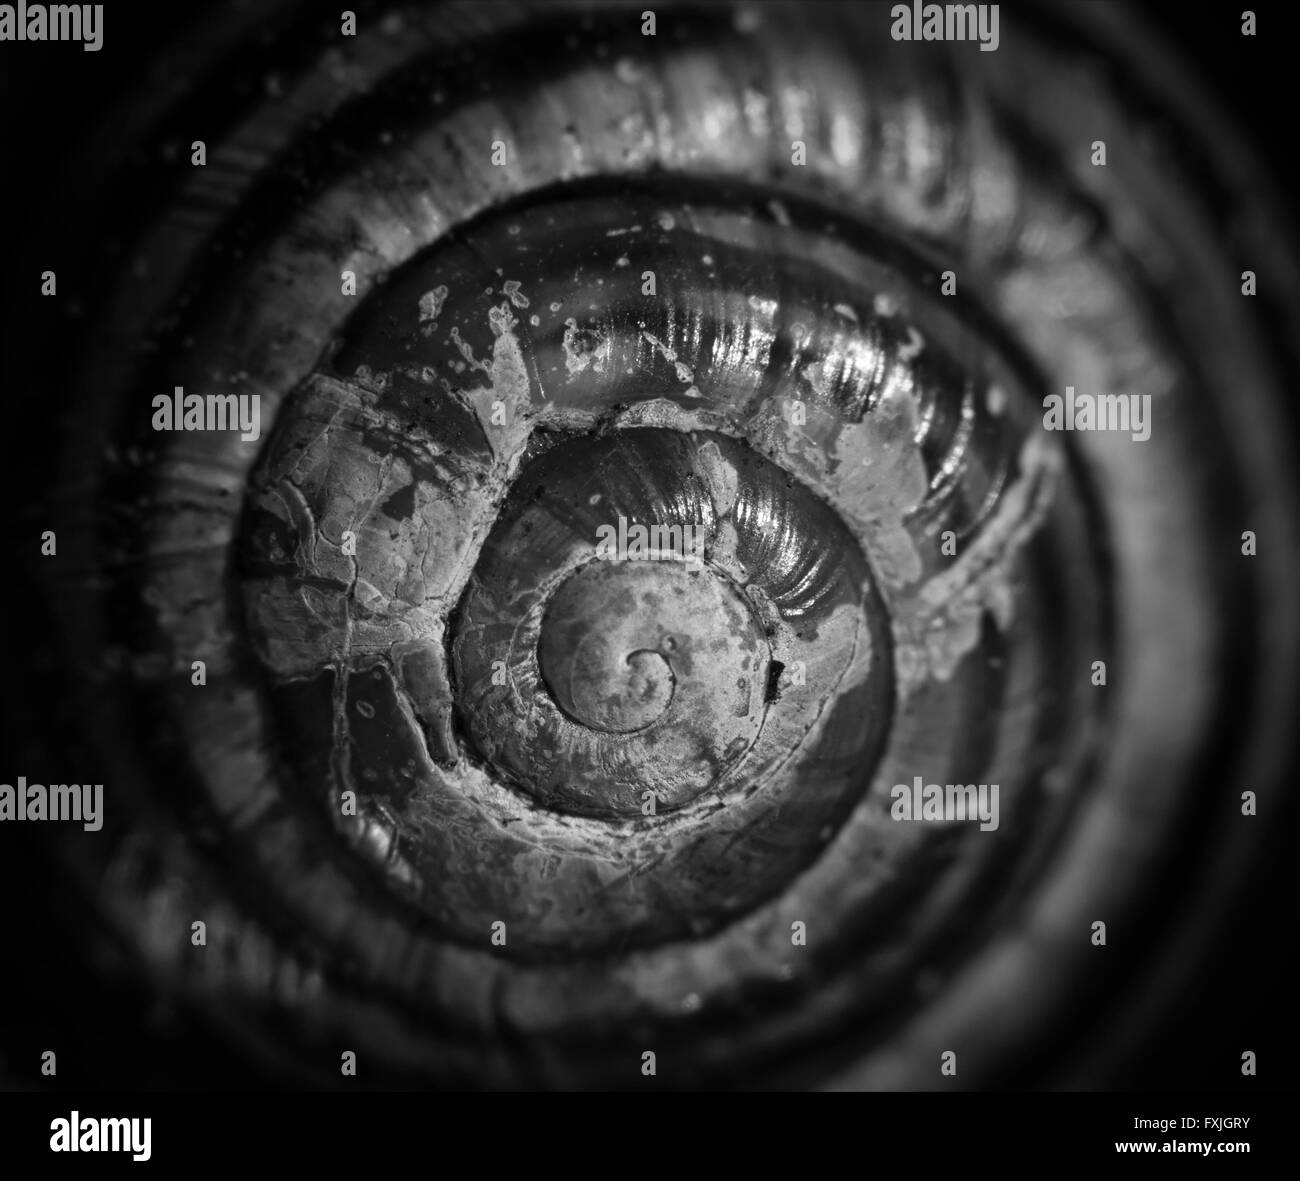 Macro image of snail shell. Stock Photo